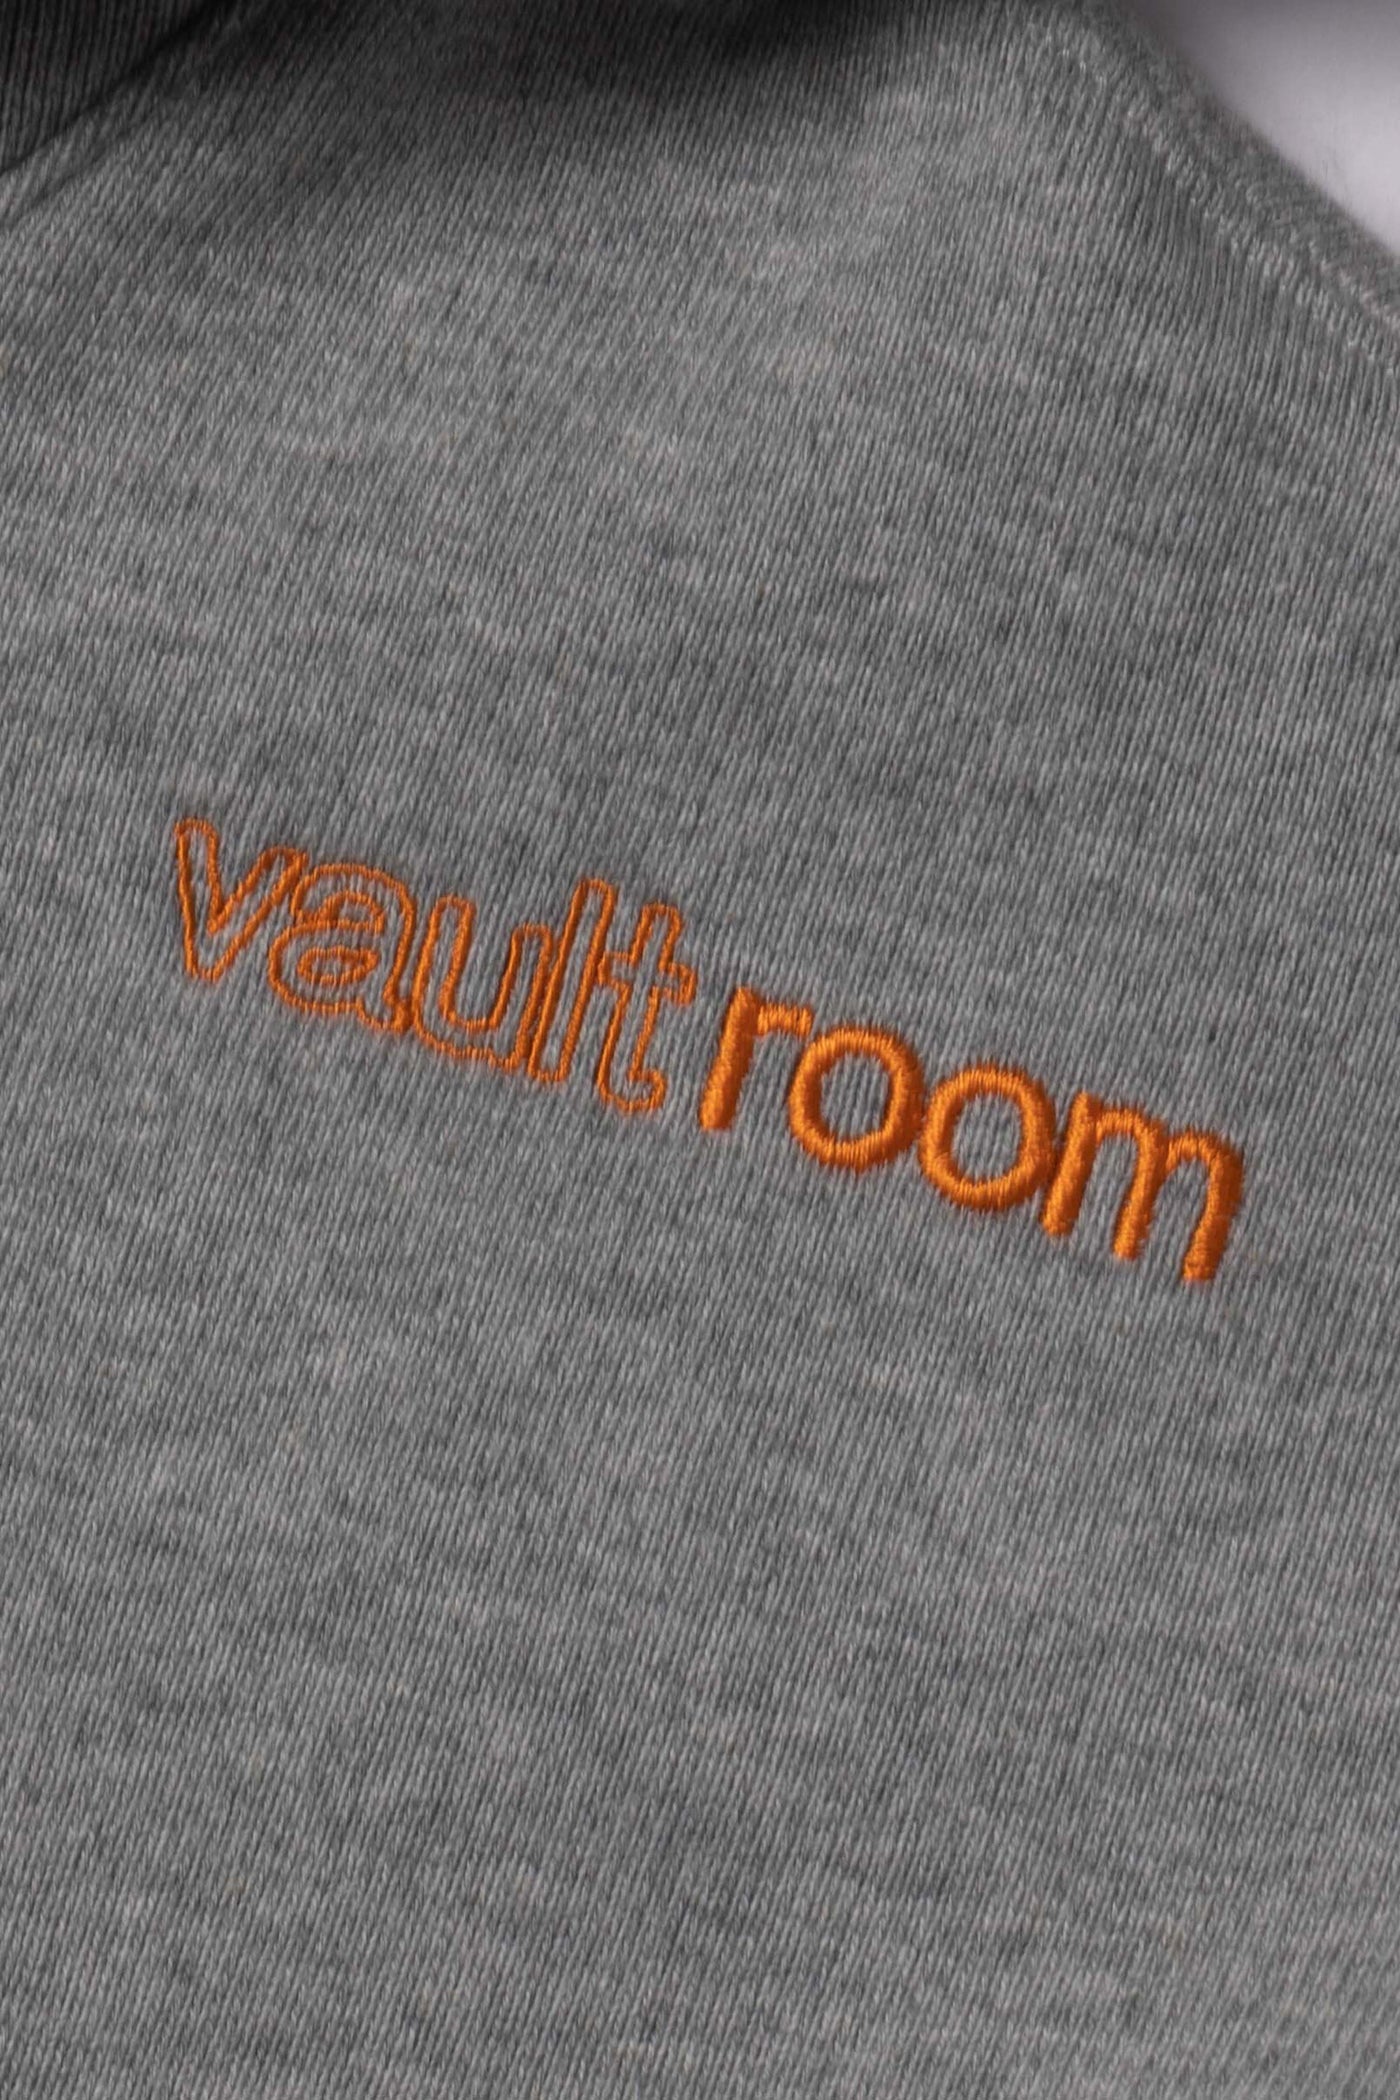 vaultroom × FNATIC HOODIE GRAY L